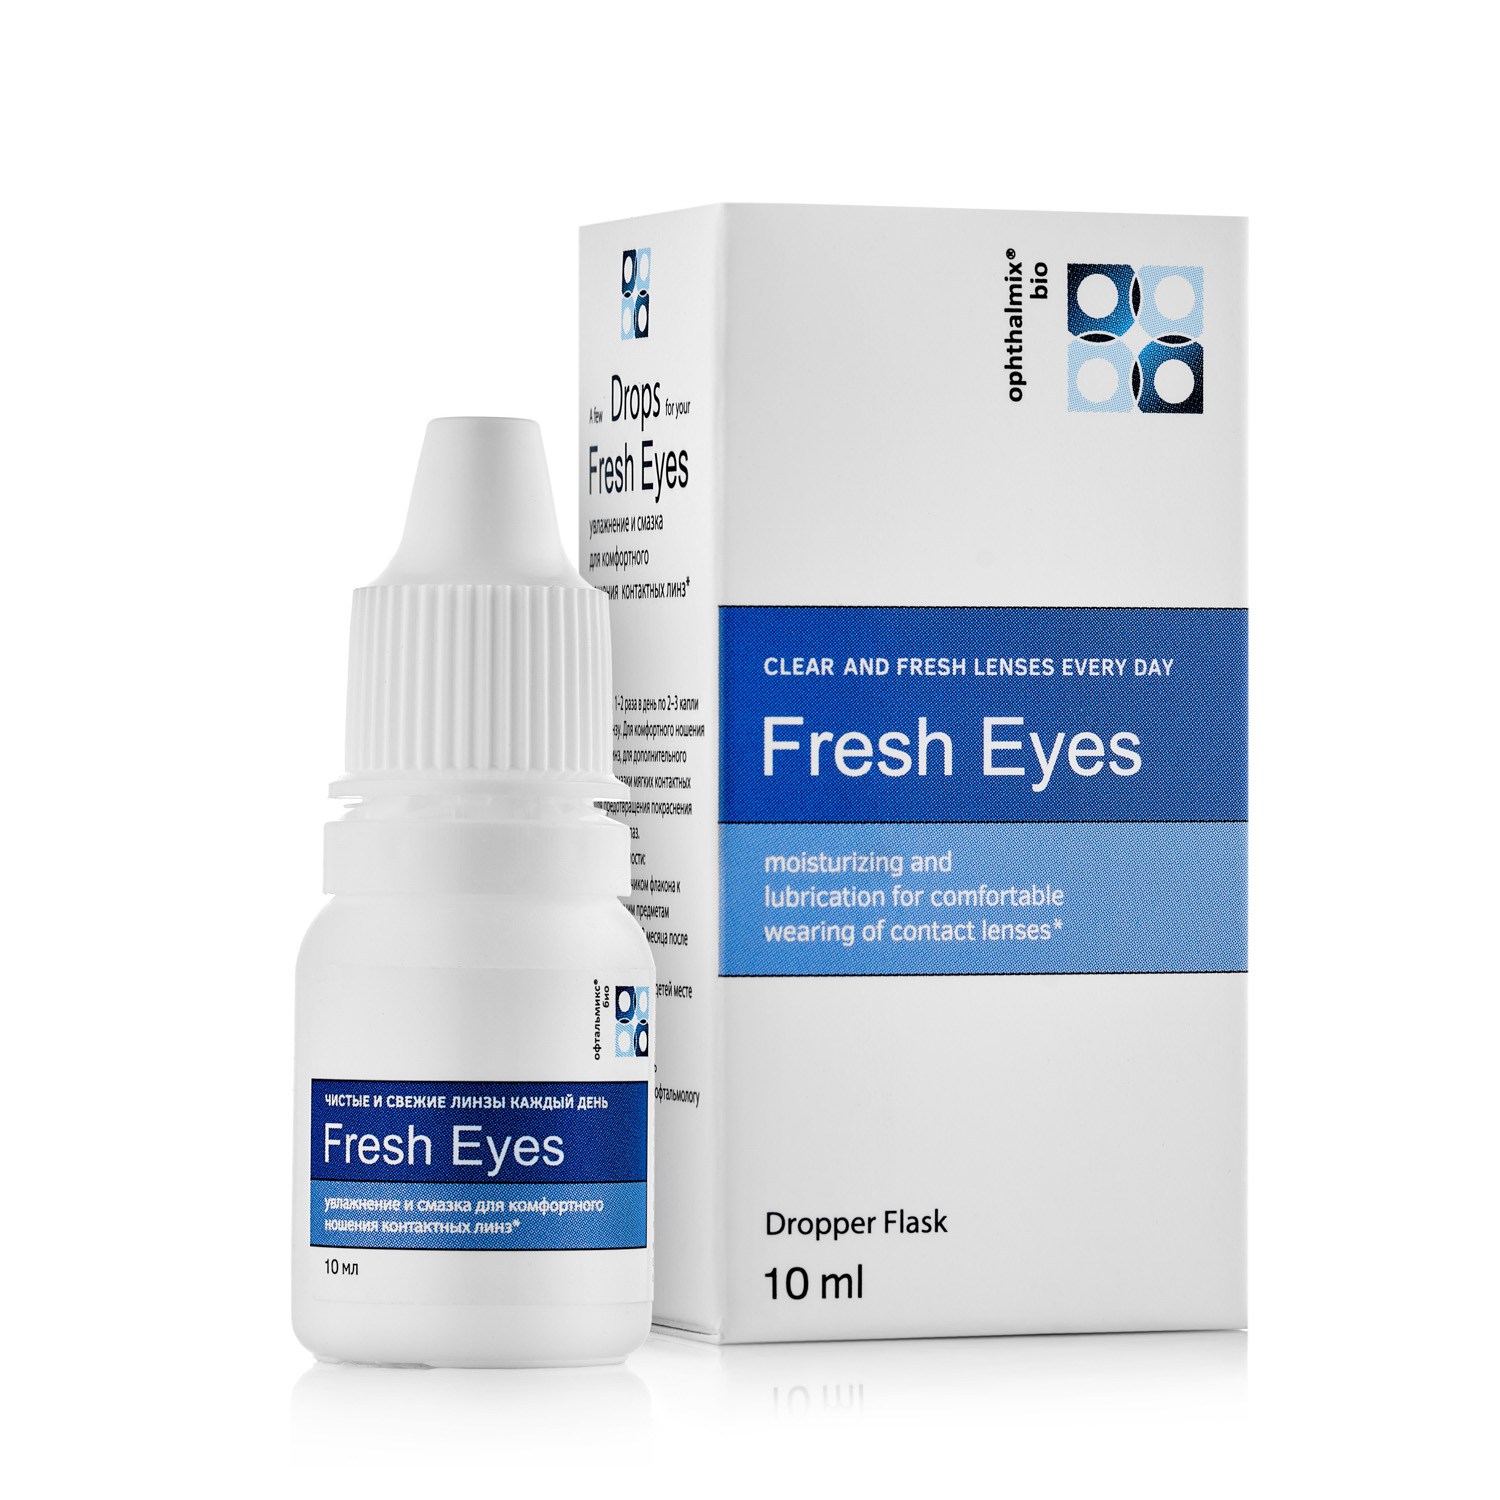 Какие есть капли для глаз. Капли Офтальмикс био Fresh Eye. Увлажняющие капли для глаз 10 мл. Капли для контактных линз увлажняющие Fresh. Глазные капли для увлажнения глаз с гиалуроновой кислотой.